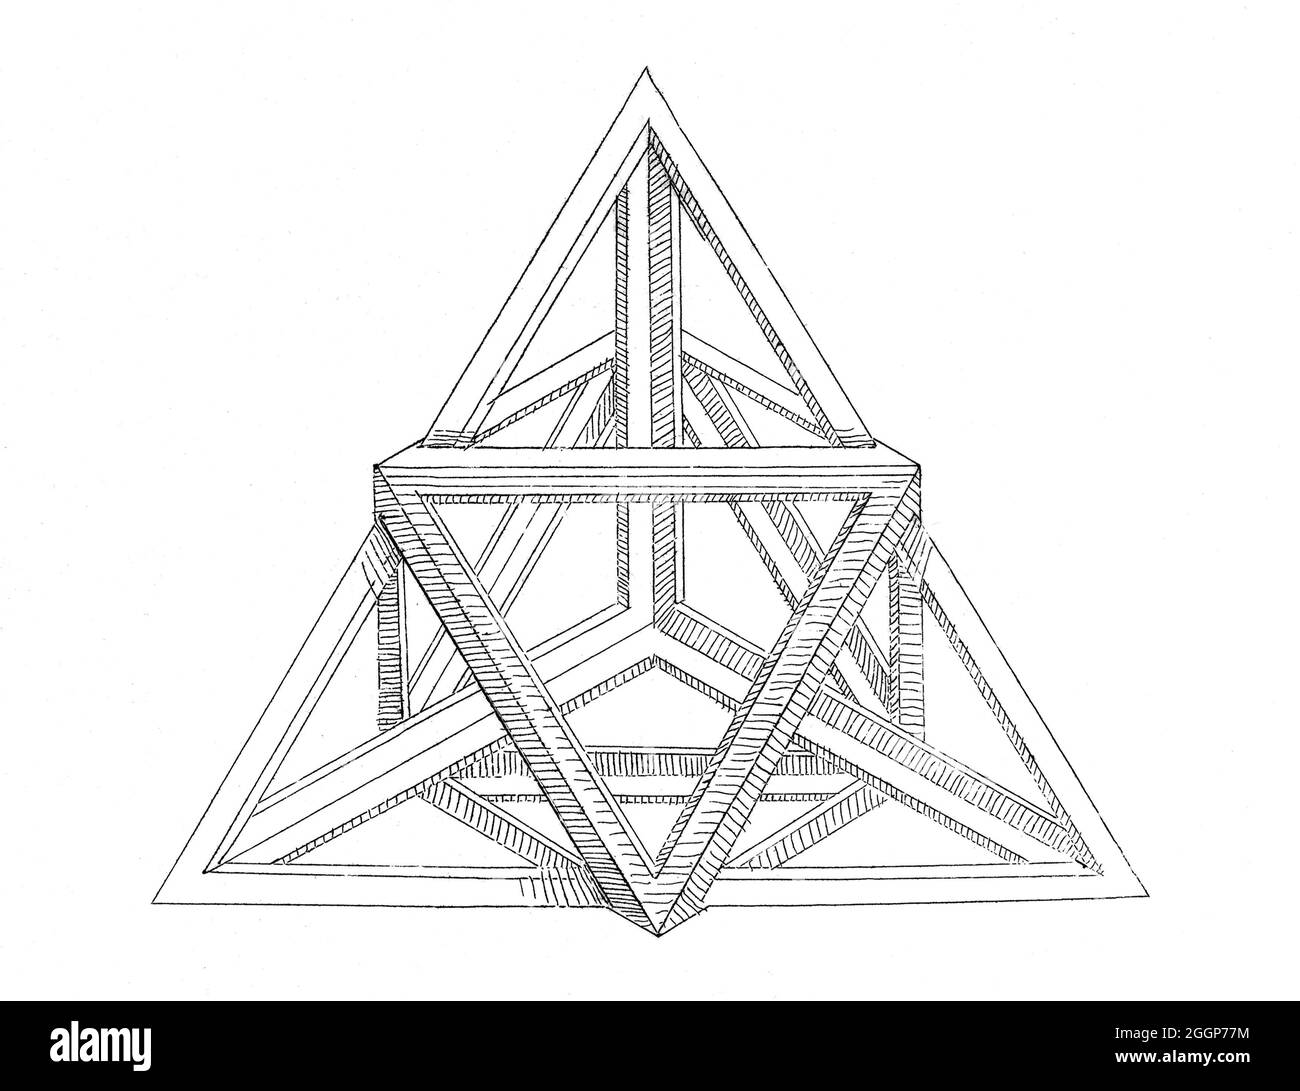 Incisione geometrica di una variazione poliedrica da 'A True and Cuty Instruction in Geometry', 1543, di Augustin Hirschvogel (1503‚Äì1553), che includeva esempi dei cinque solidi platonici - tetraedro, esahedron (cubo), ottaedro, dodecaedro, e icosahedron -- che, secondo Platone, erano i blocchi di costruzione del mondo del materiale. Foto Stock